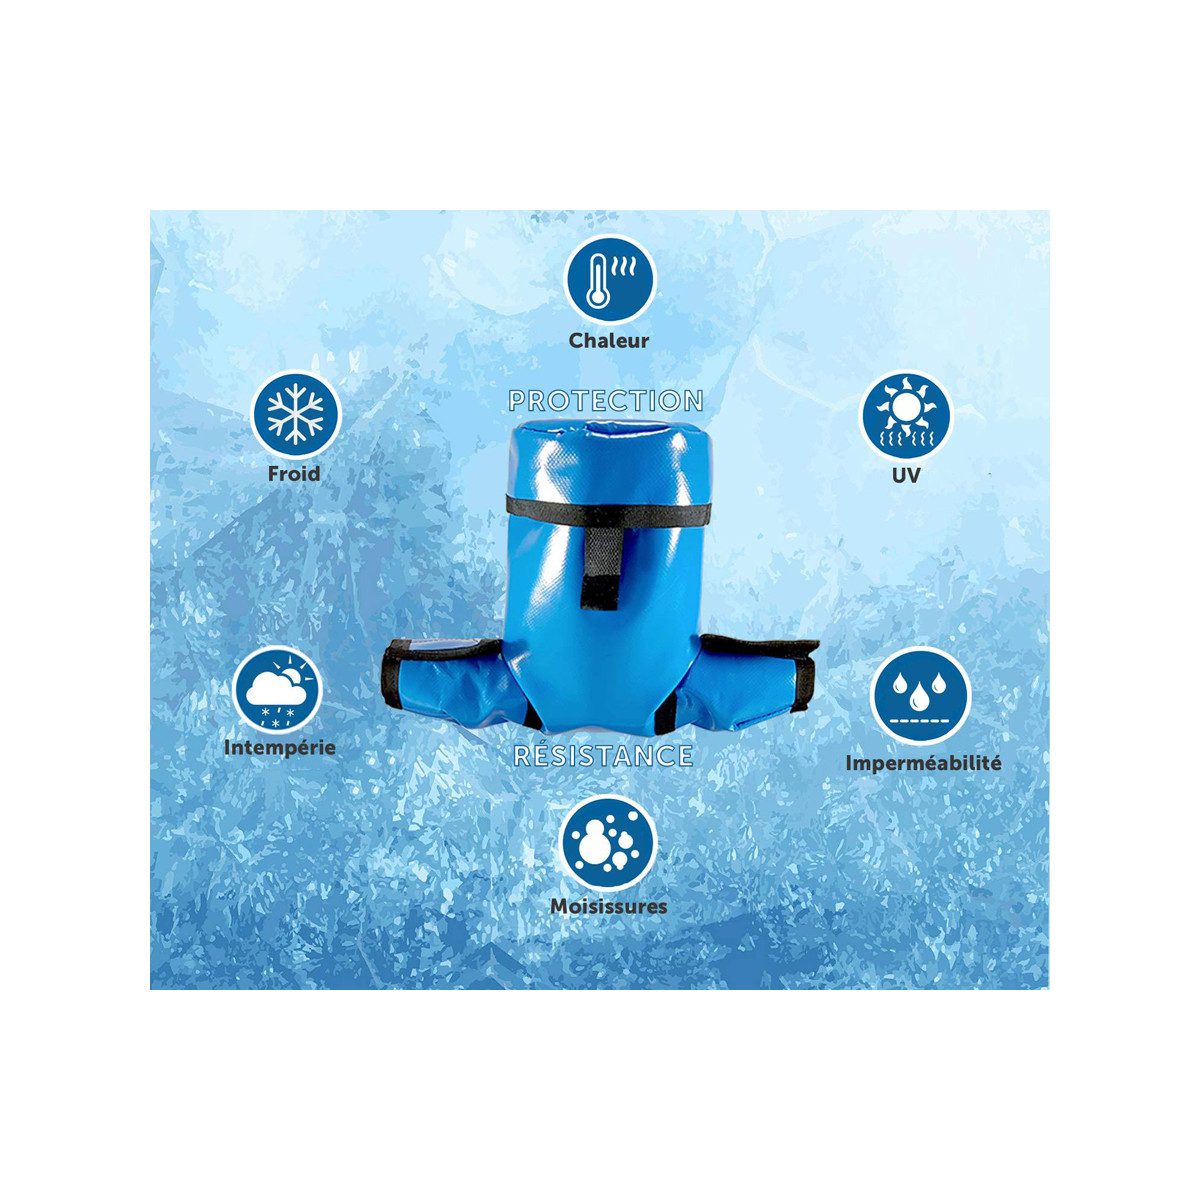 Installez une housse de protection compteur d'eau standard PROTECTO